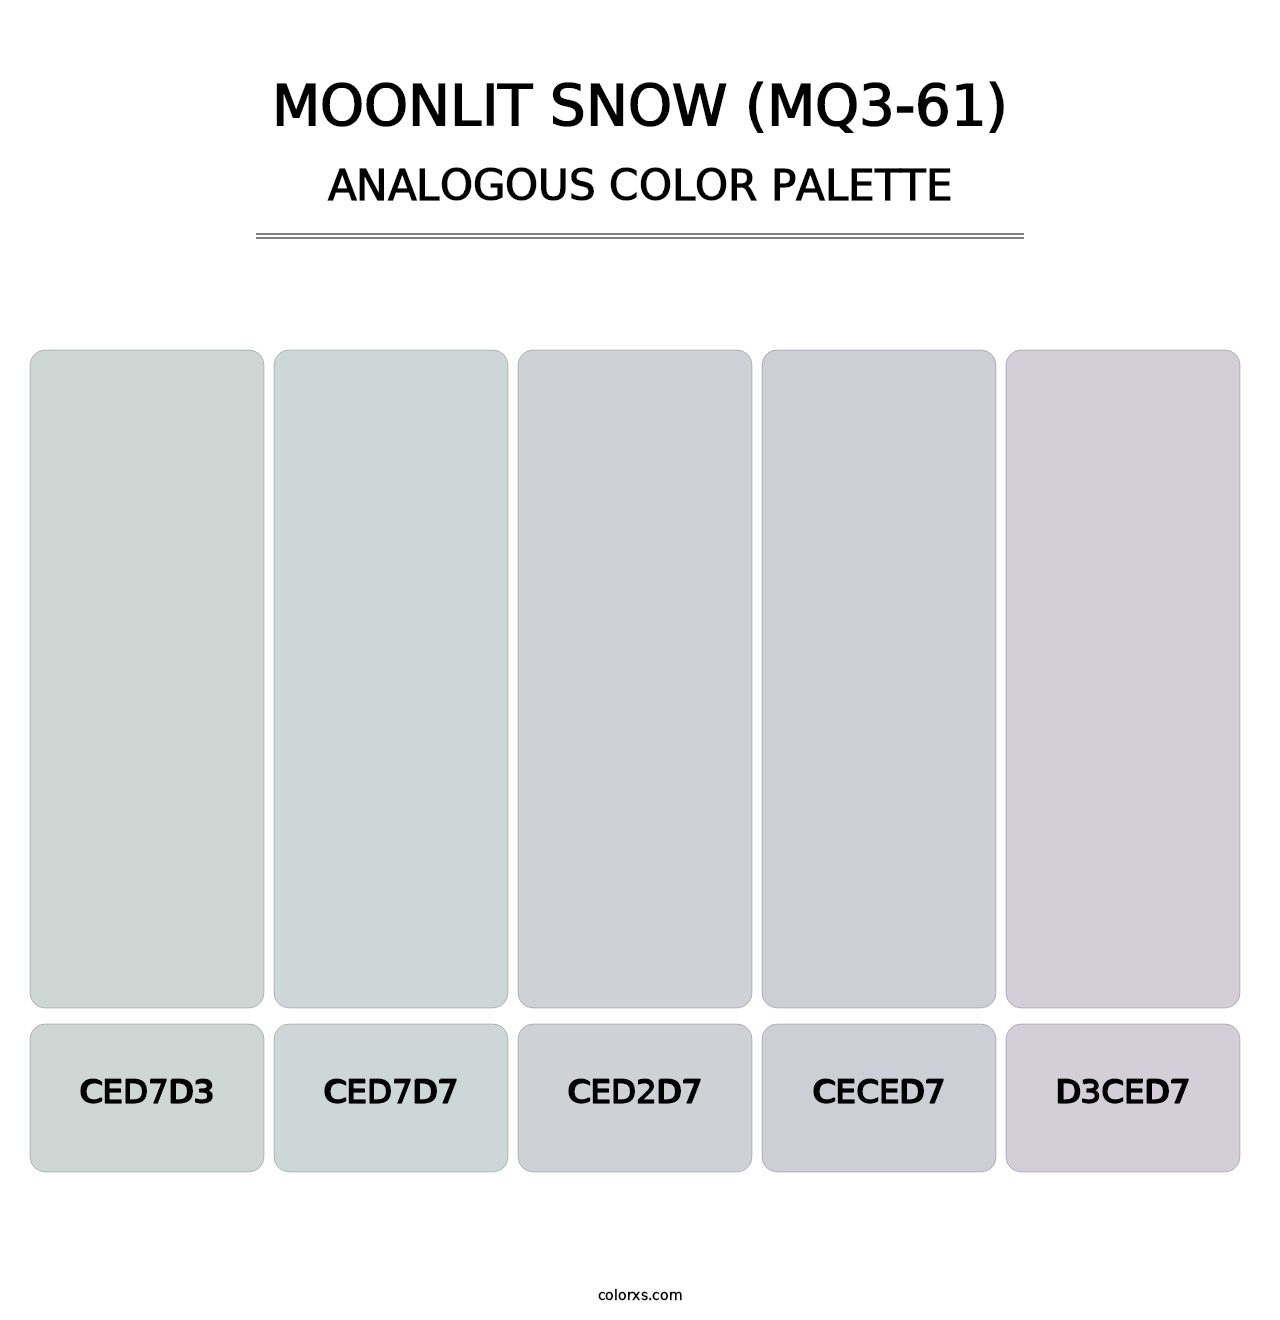 Moonlit Snow (MQ3-61) - Analogous Color Palette